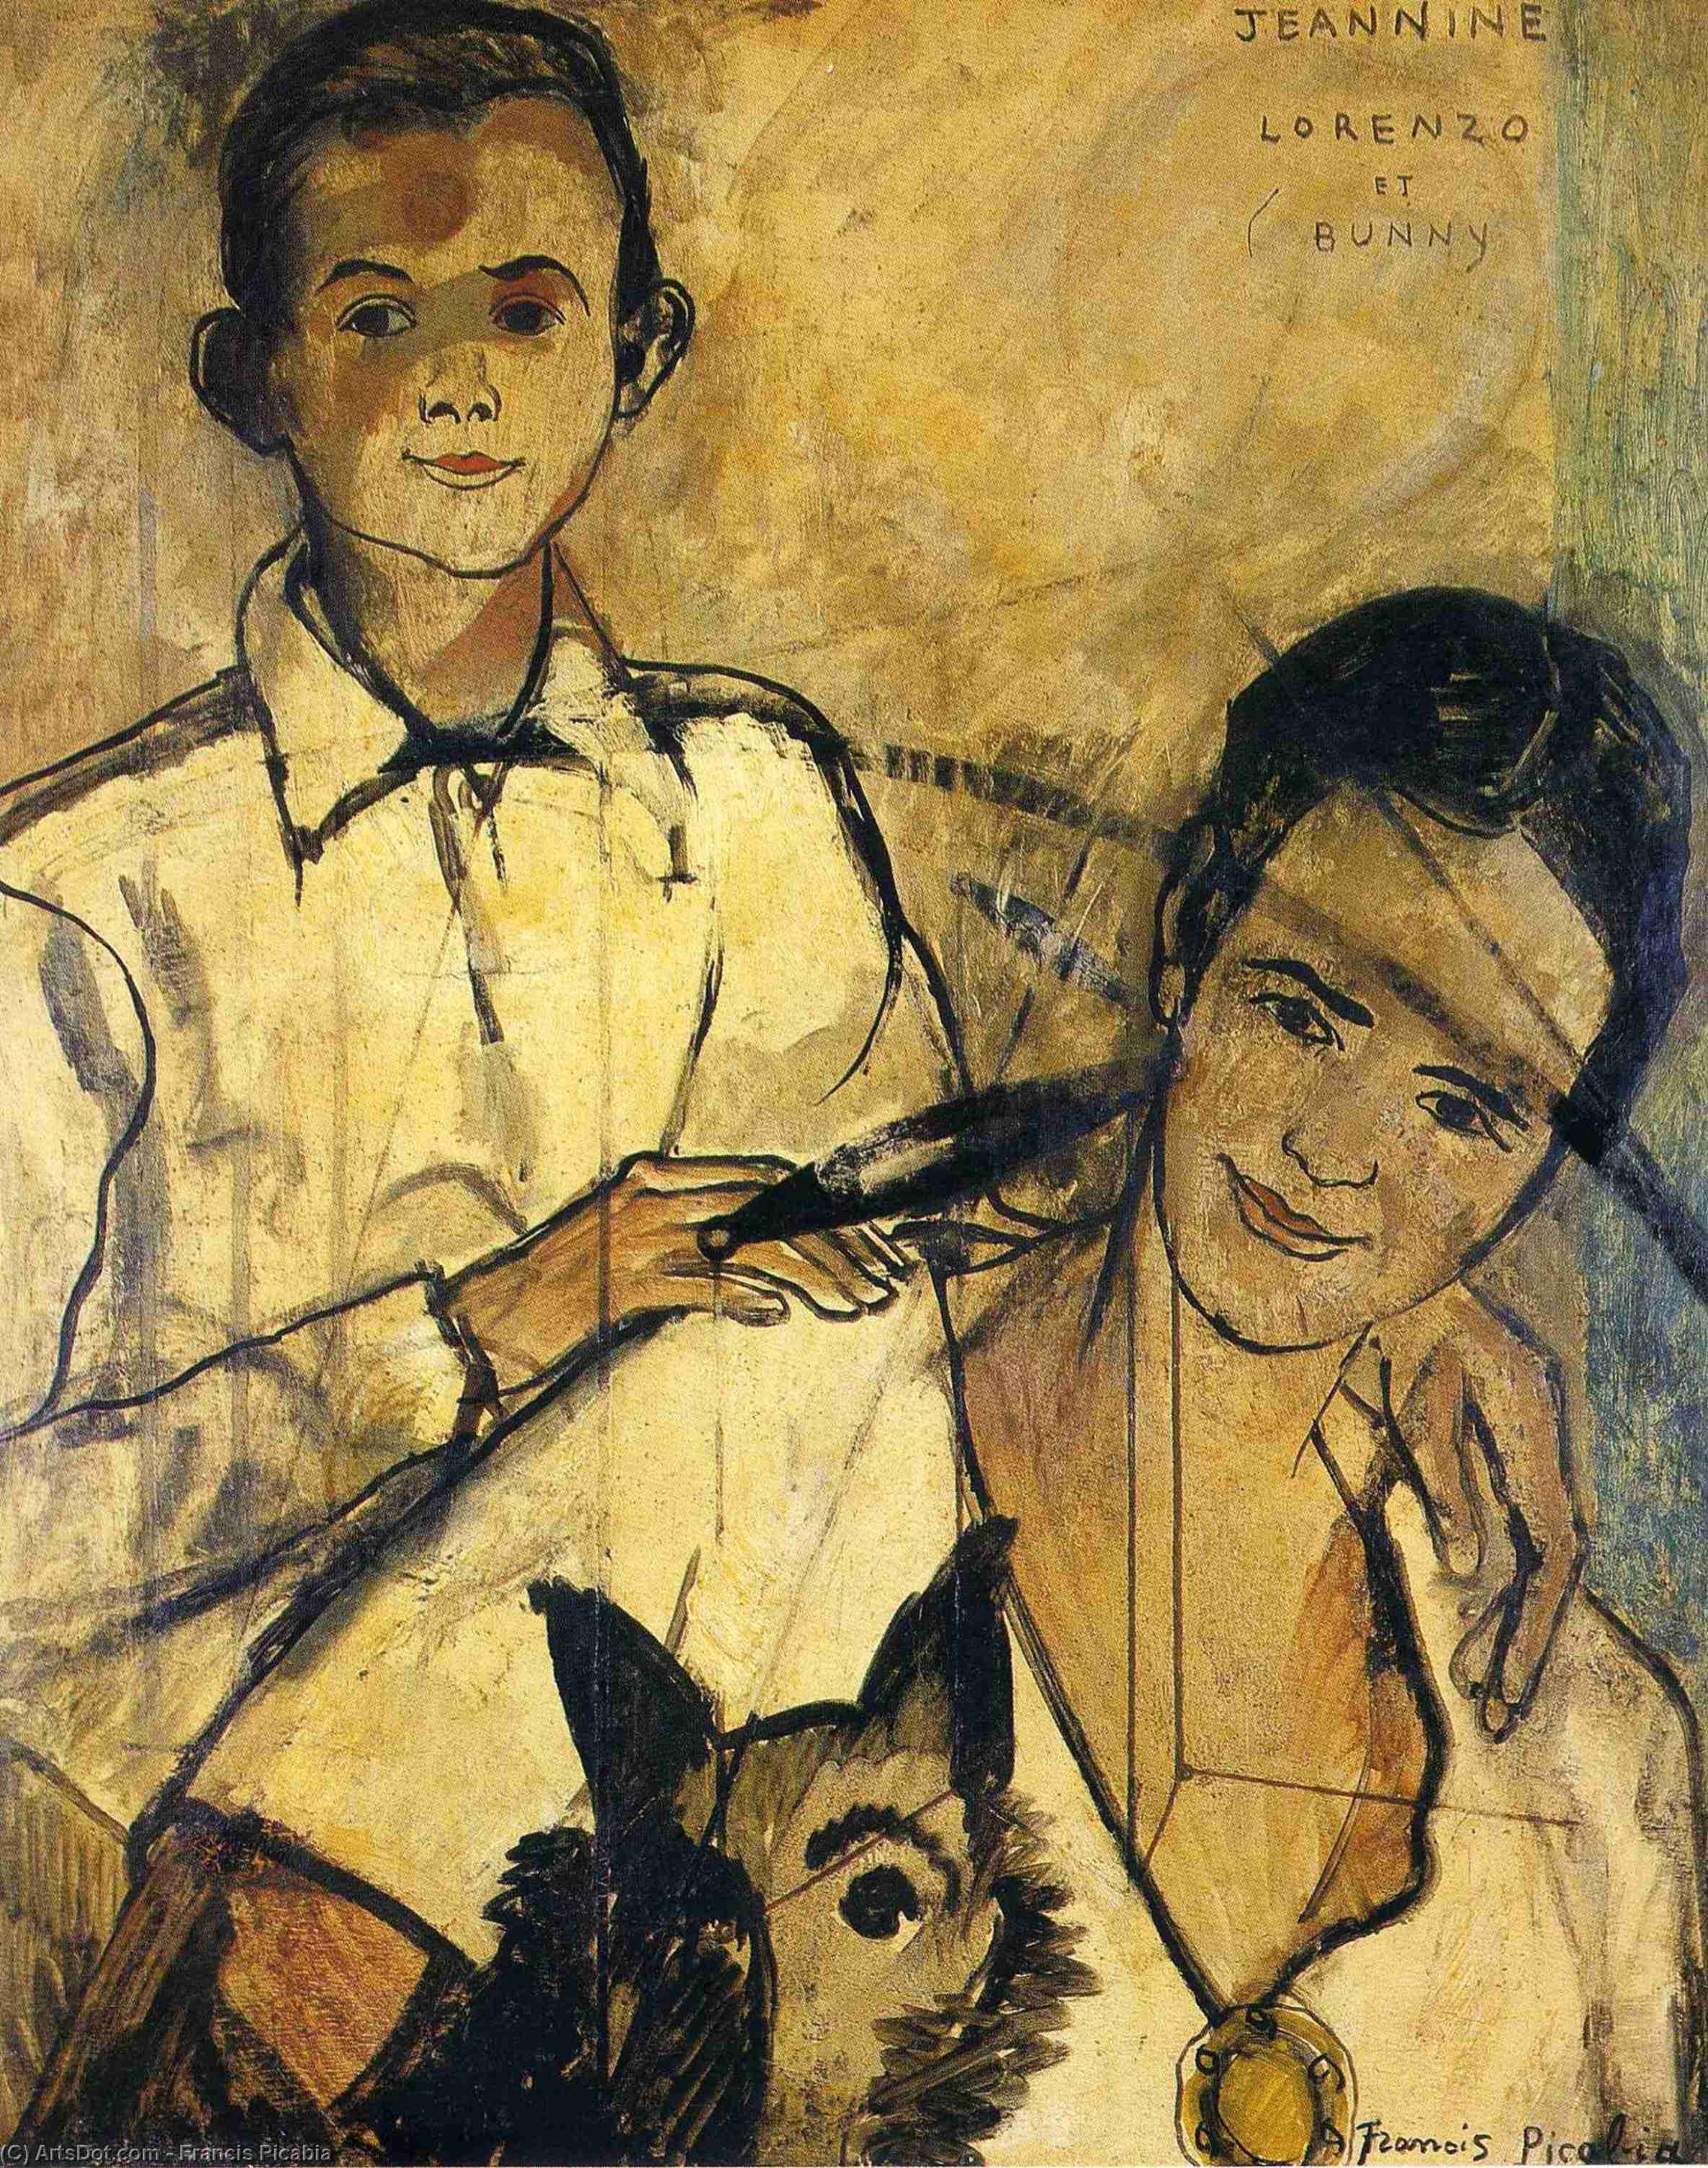 WikiOO.org - Енциклопедия за изящни изкуства - Живопис, Произведения на изкуството Francis Picabia - Jeannine, Lorenzo et Bunny